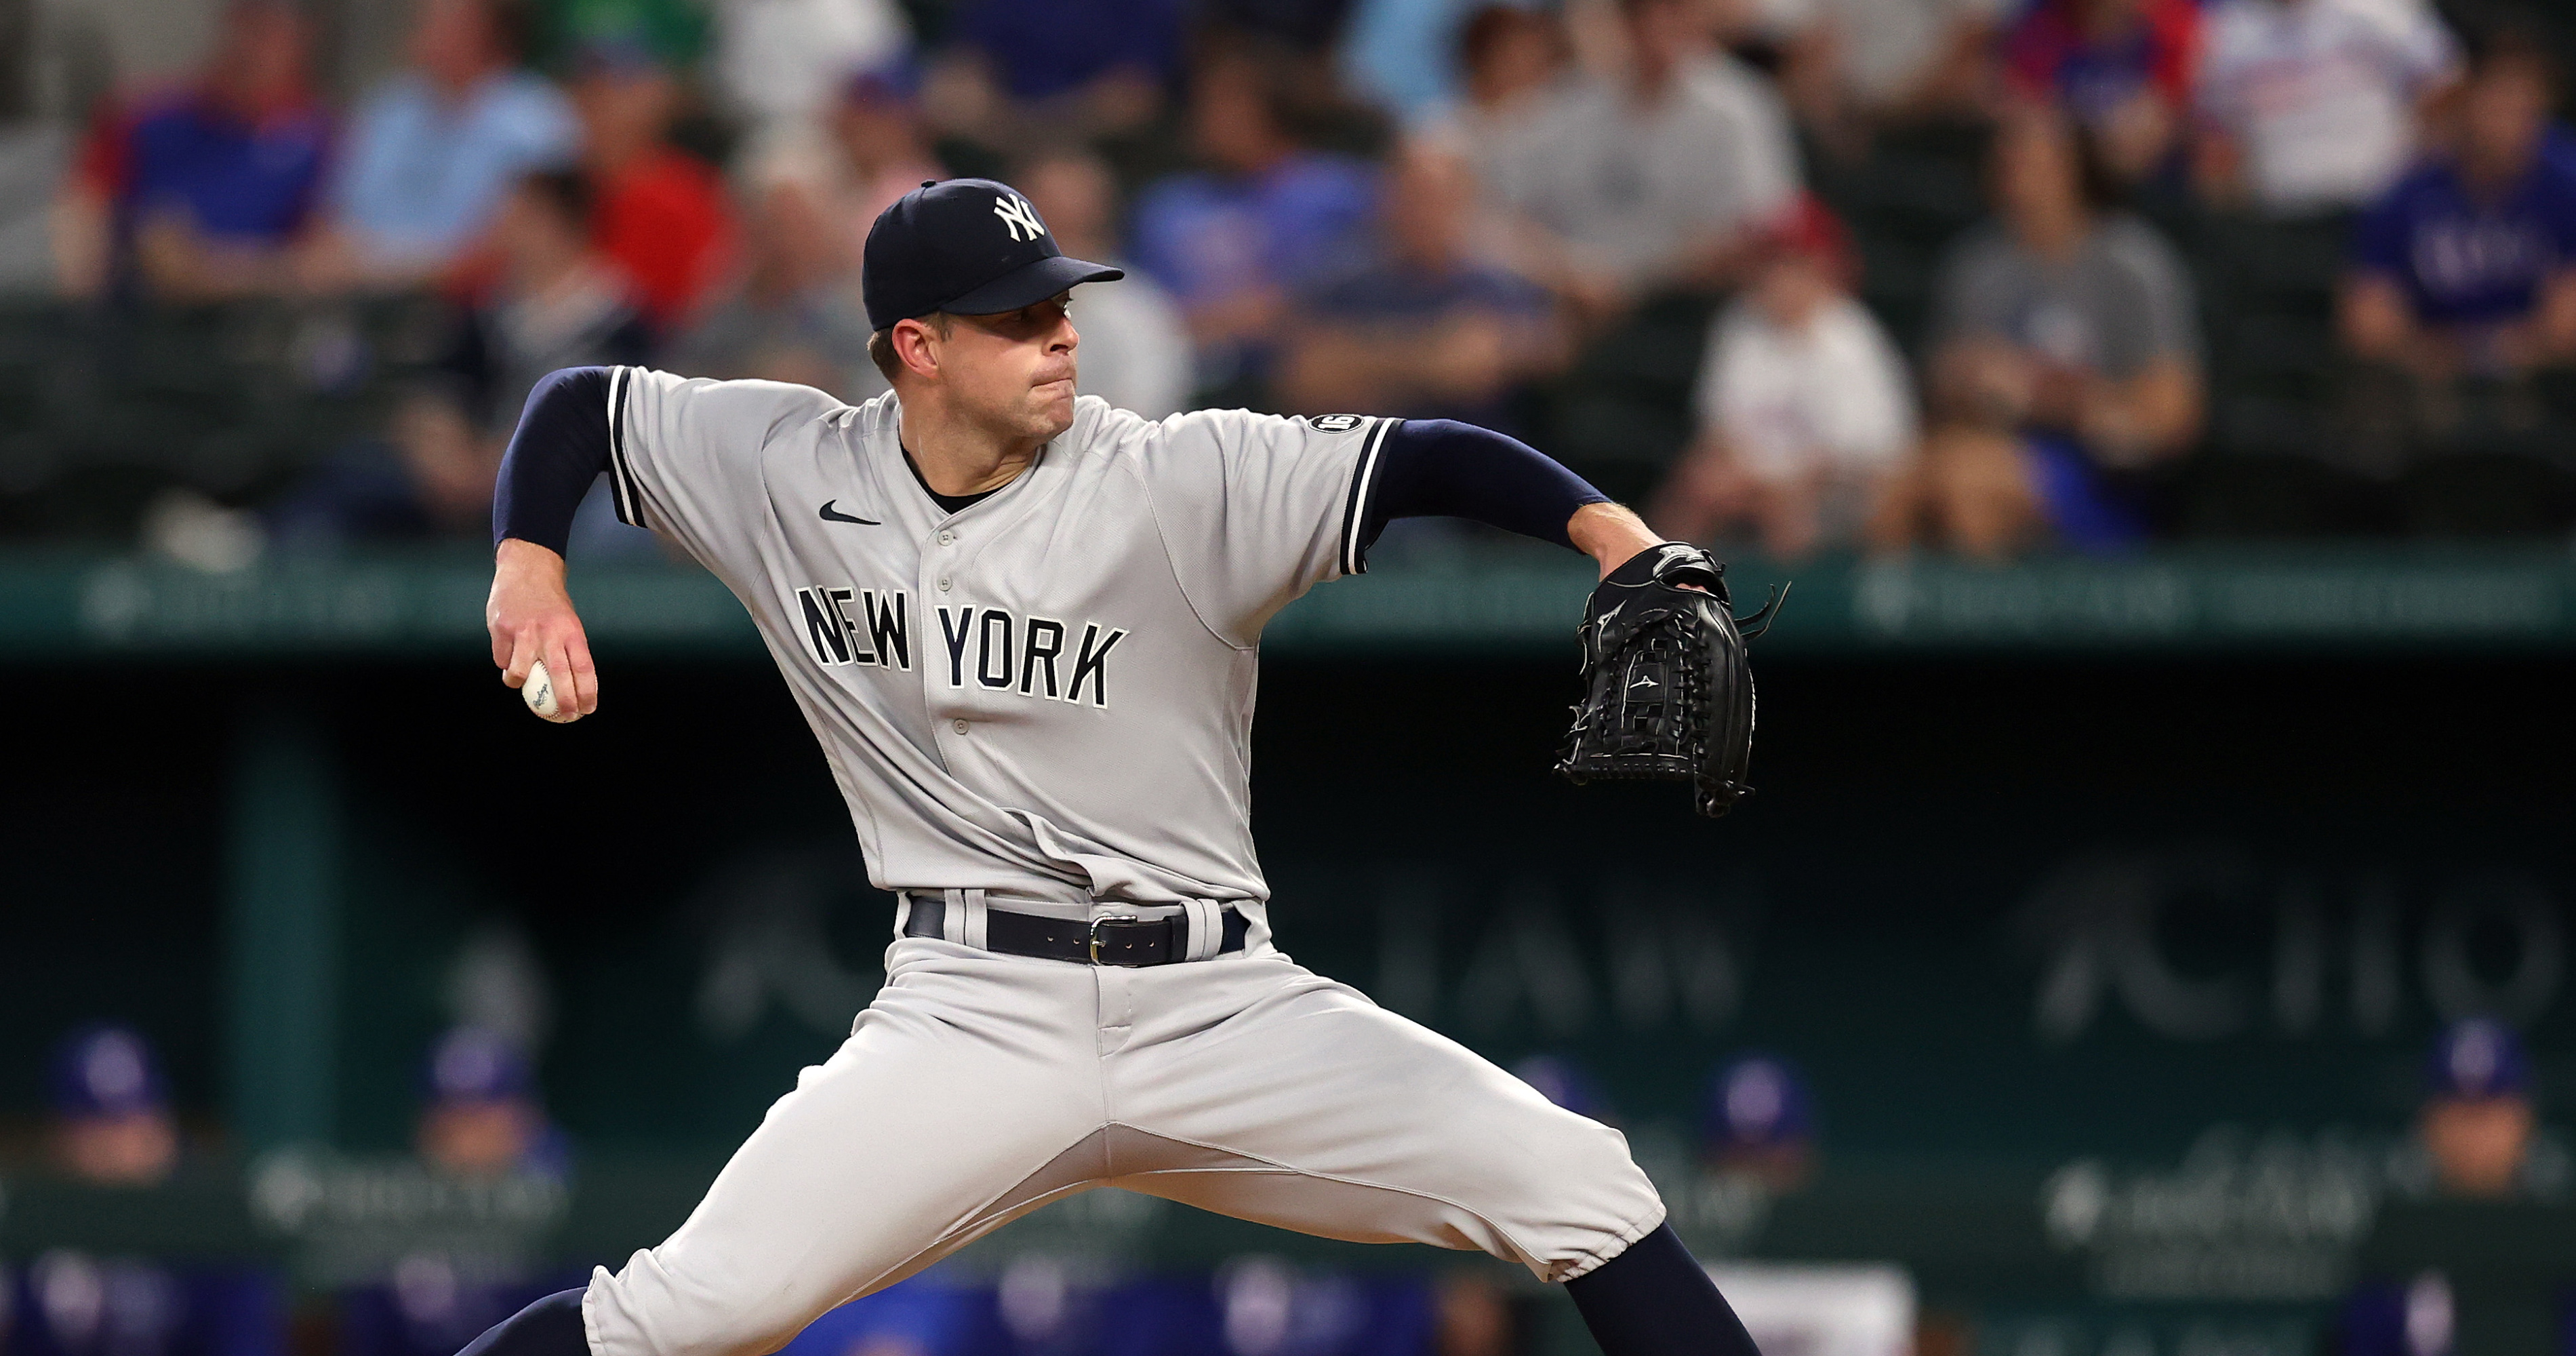 Yankees' Corey Kluber no-hits Rangers in Texas